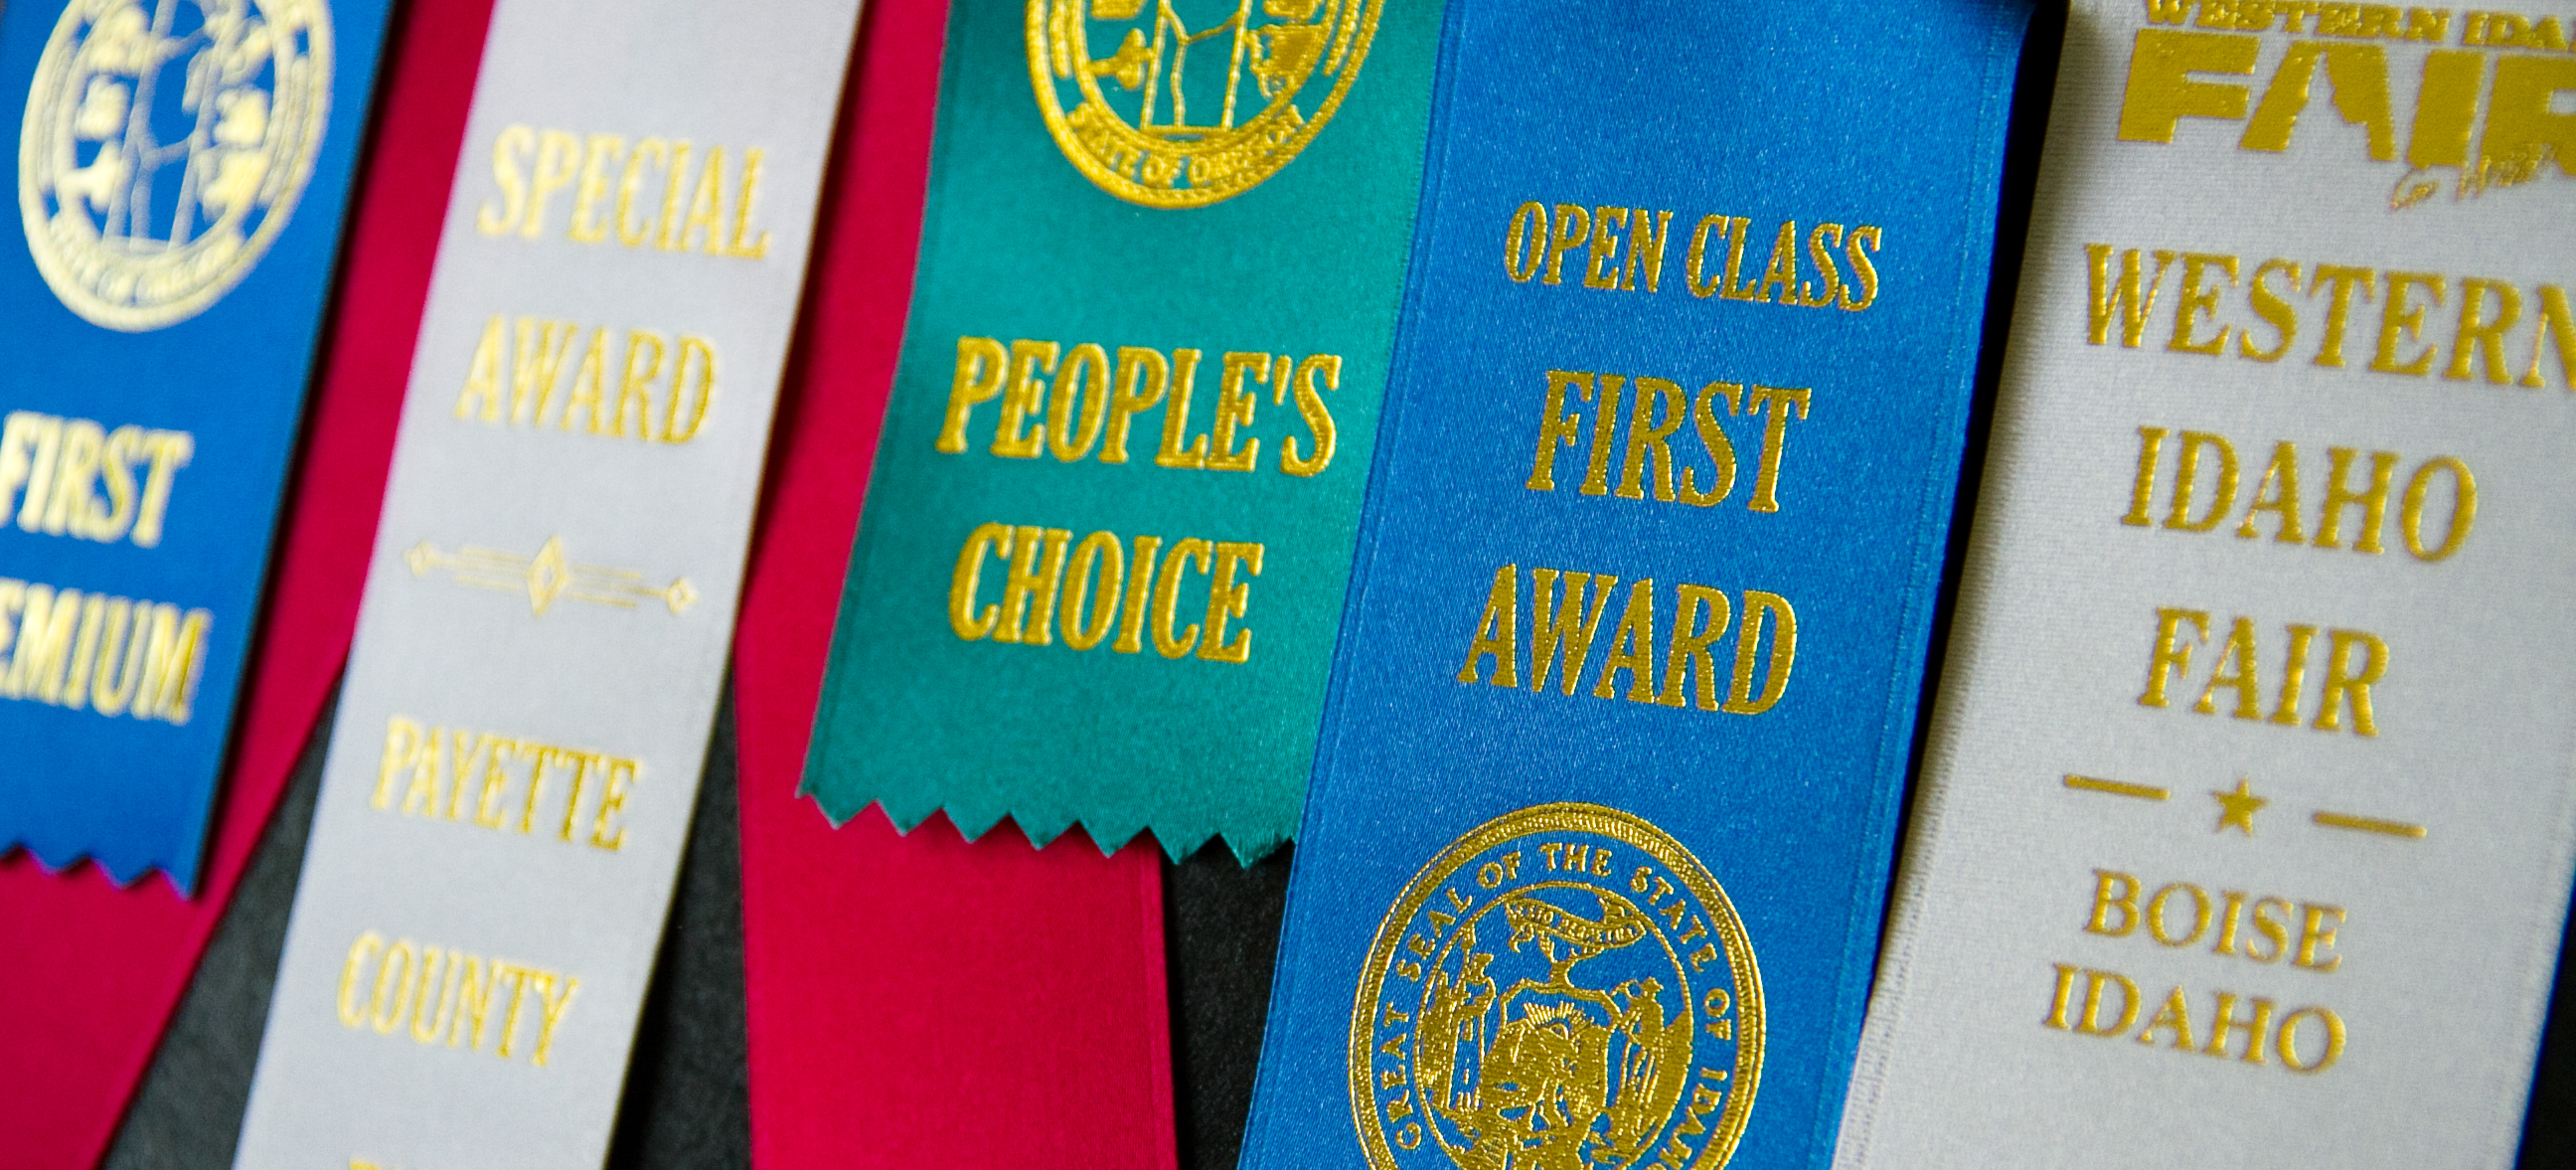 award ribbons from the malheur county fair, payette county fair, and western idaho fair